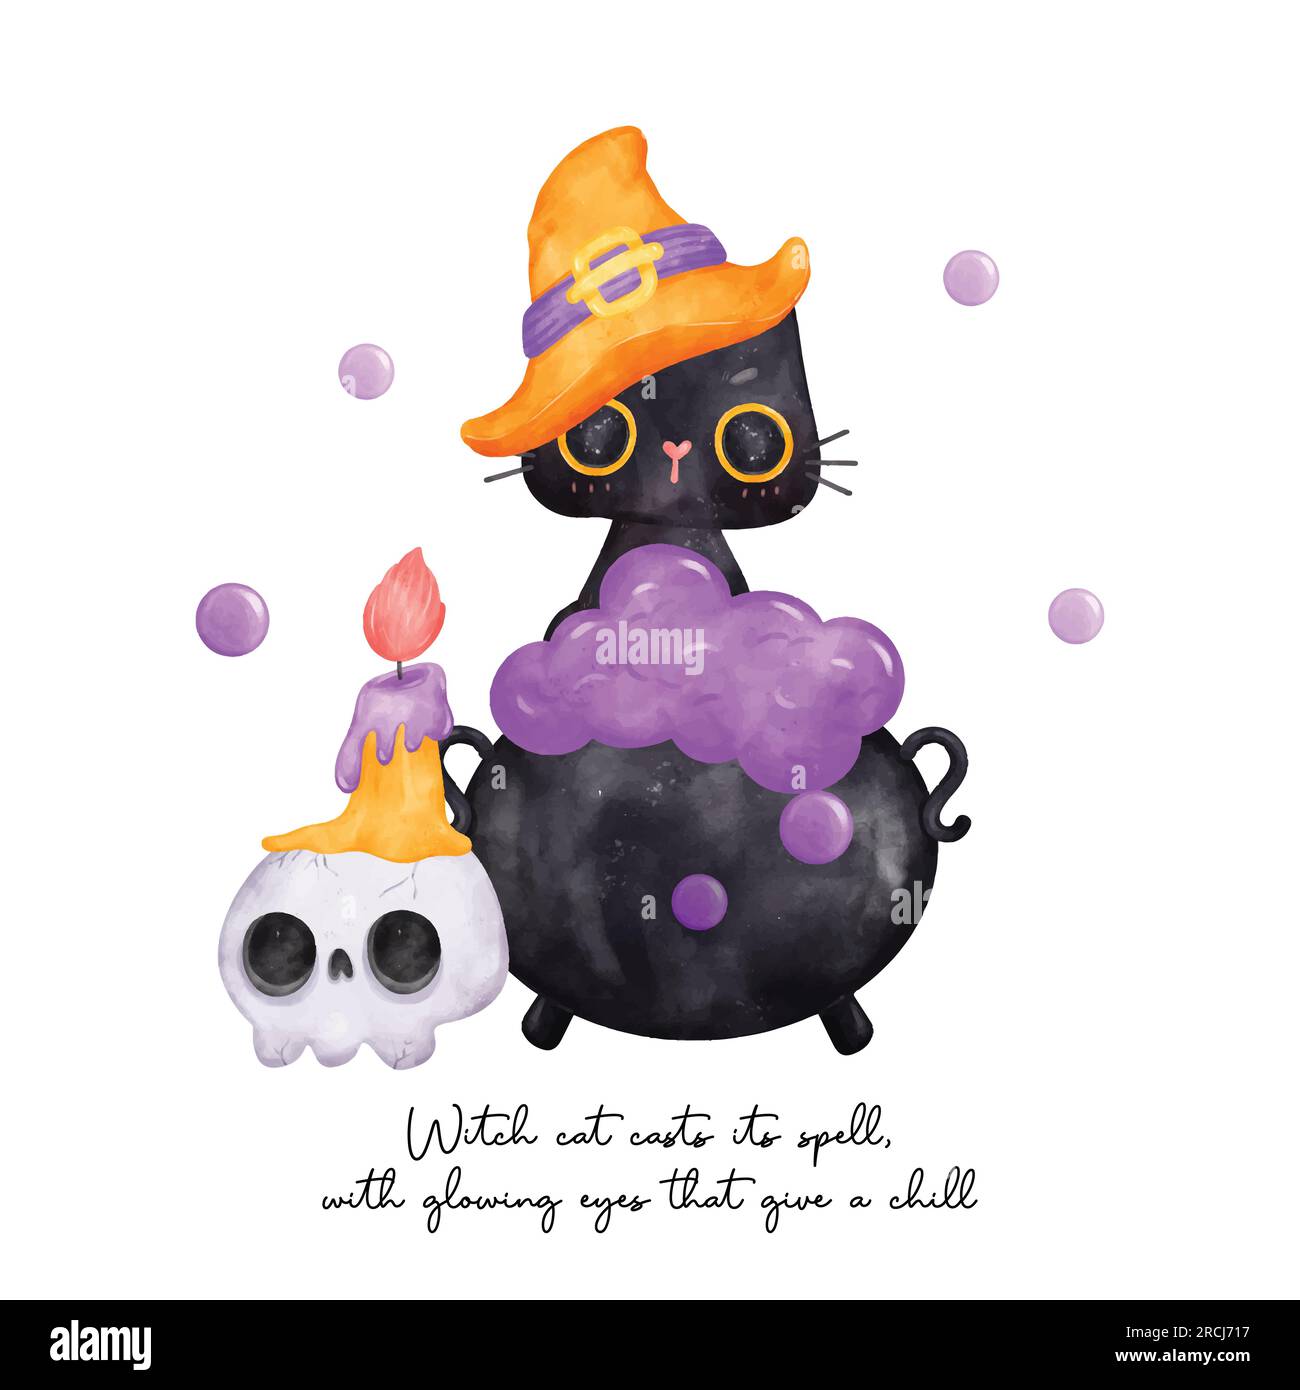 Halloween avec cette jolie et drôle illustration aquarelle de chat noir. L'adorable ami félin porte un chapeau de sorcière tout en étant assis sur un chaudron bouillonnant Illustration de Vecteur